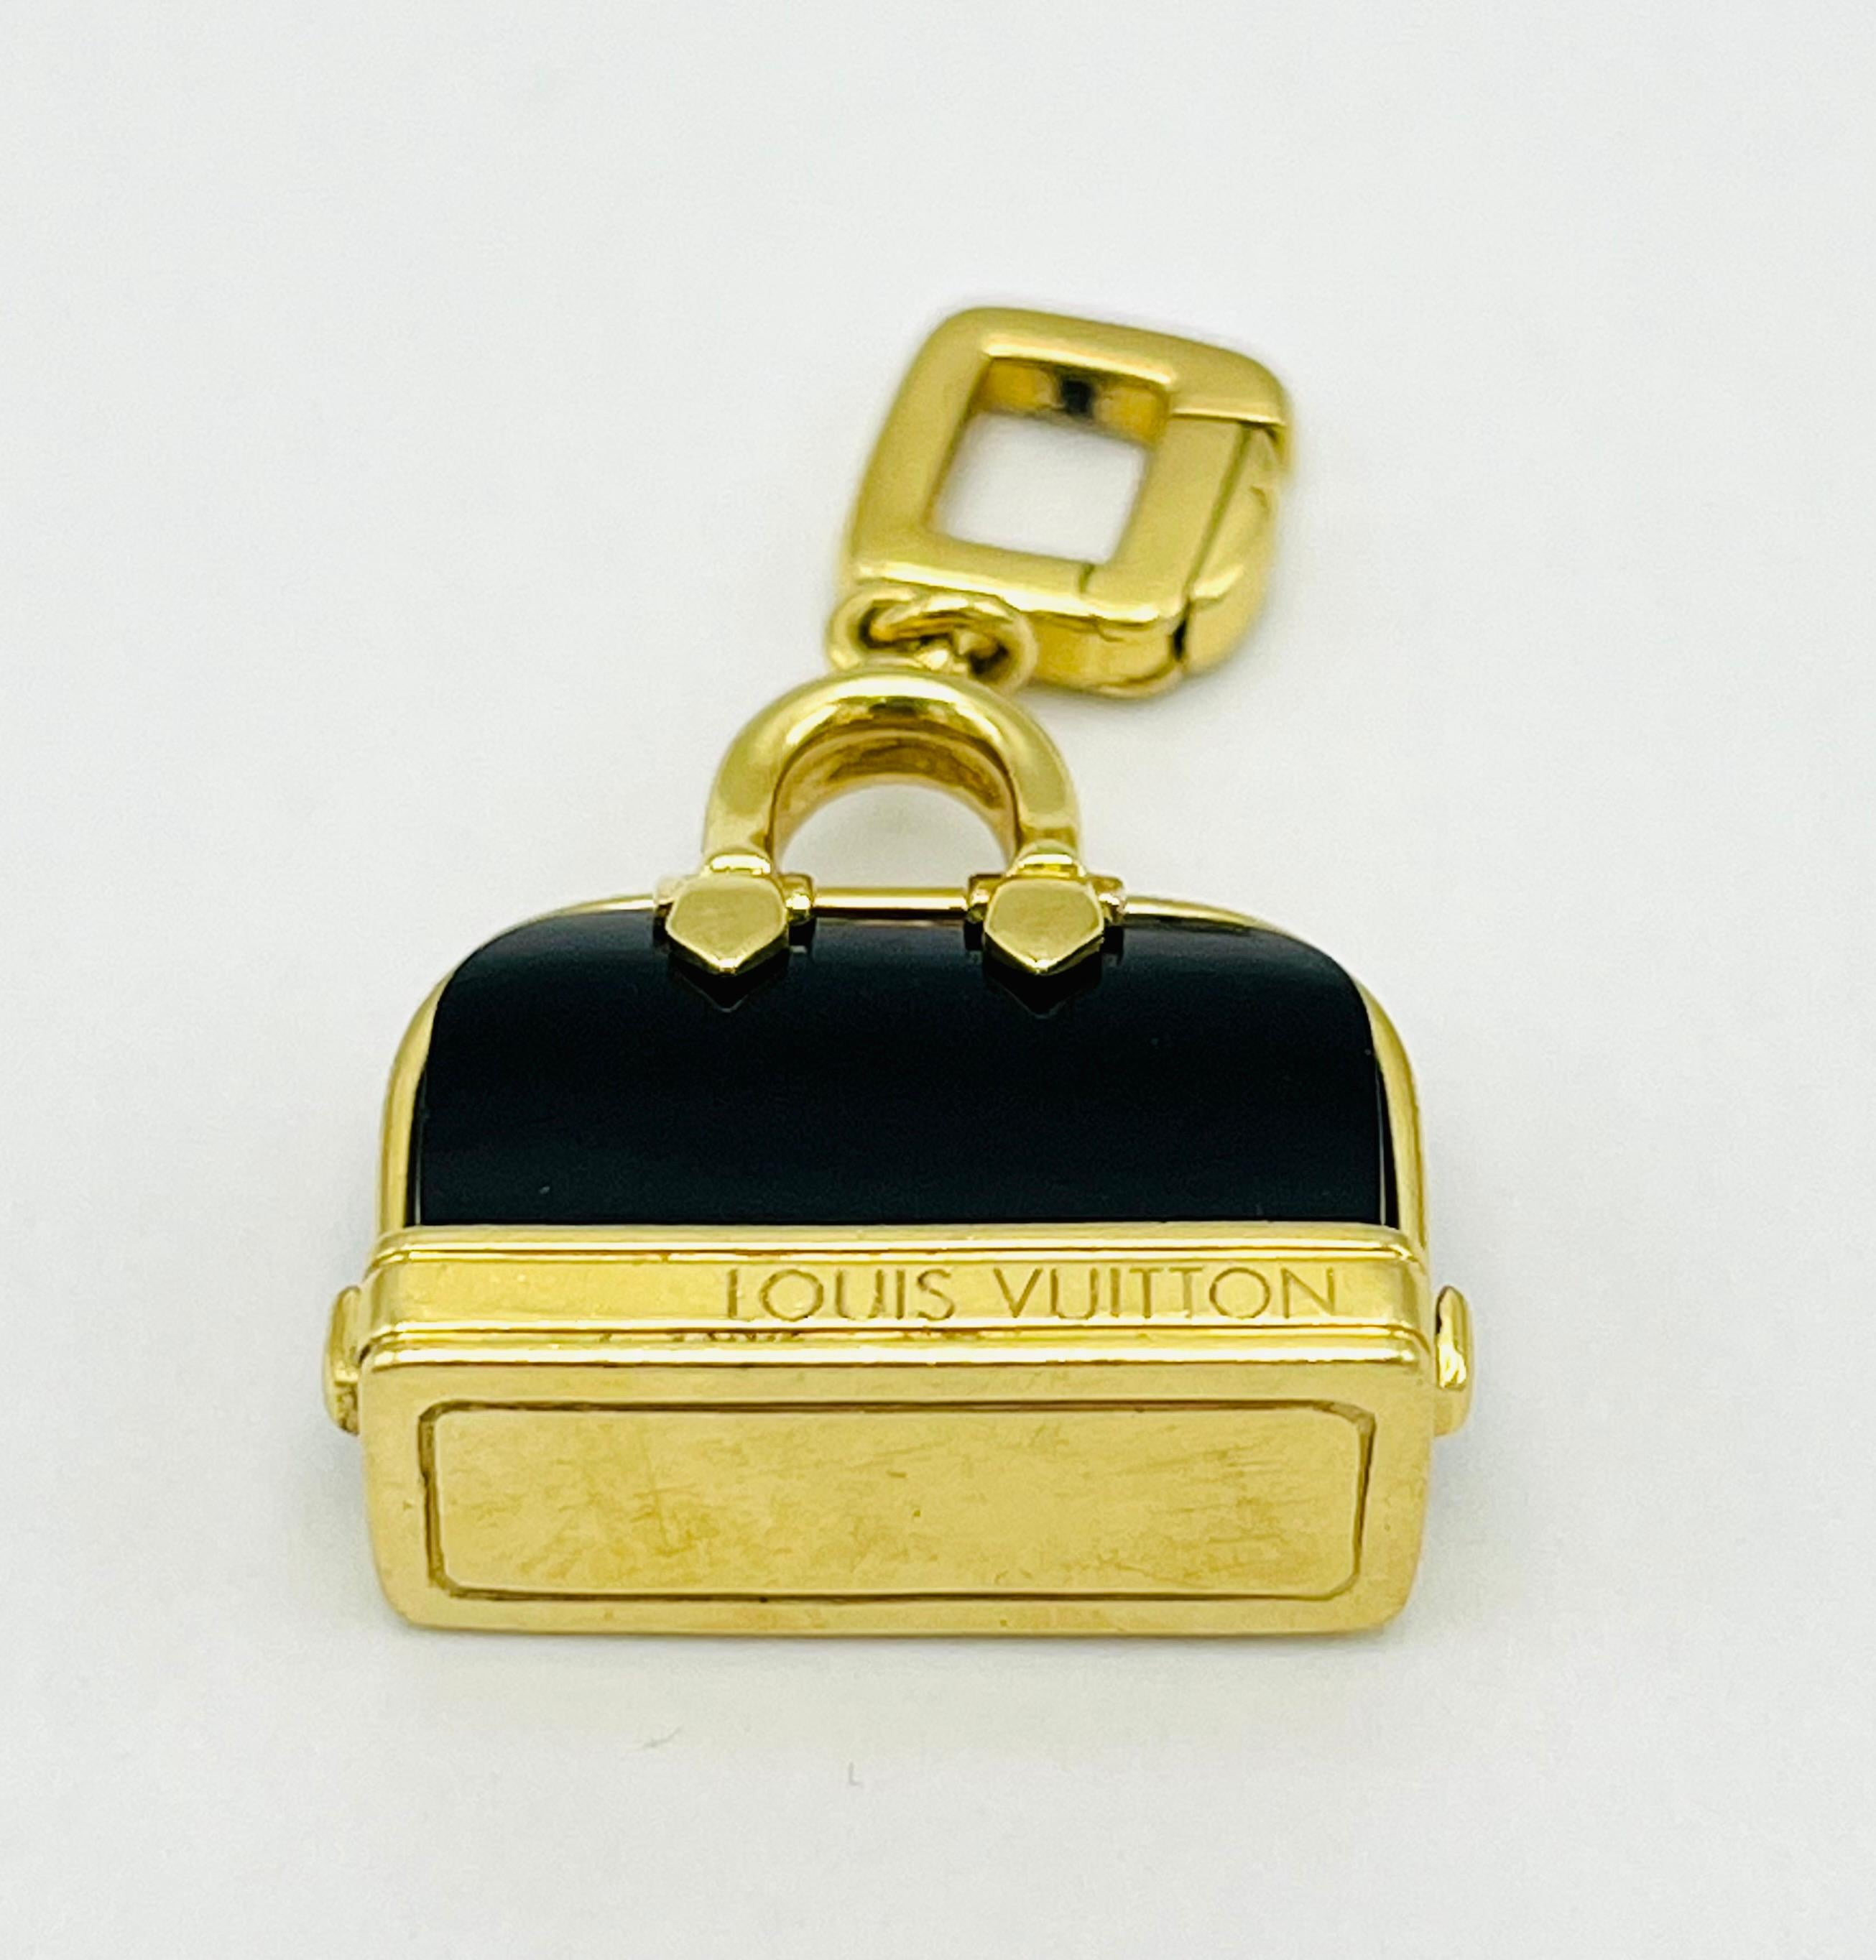 Einzelheiten zum Produkt:

Der Anhänger wurde von Louis Vuitton entworfen und besteht aus 18 Karat Gelbgold und schwarzer Emaille.